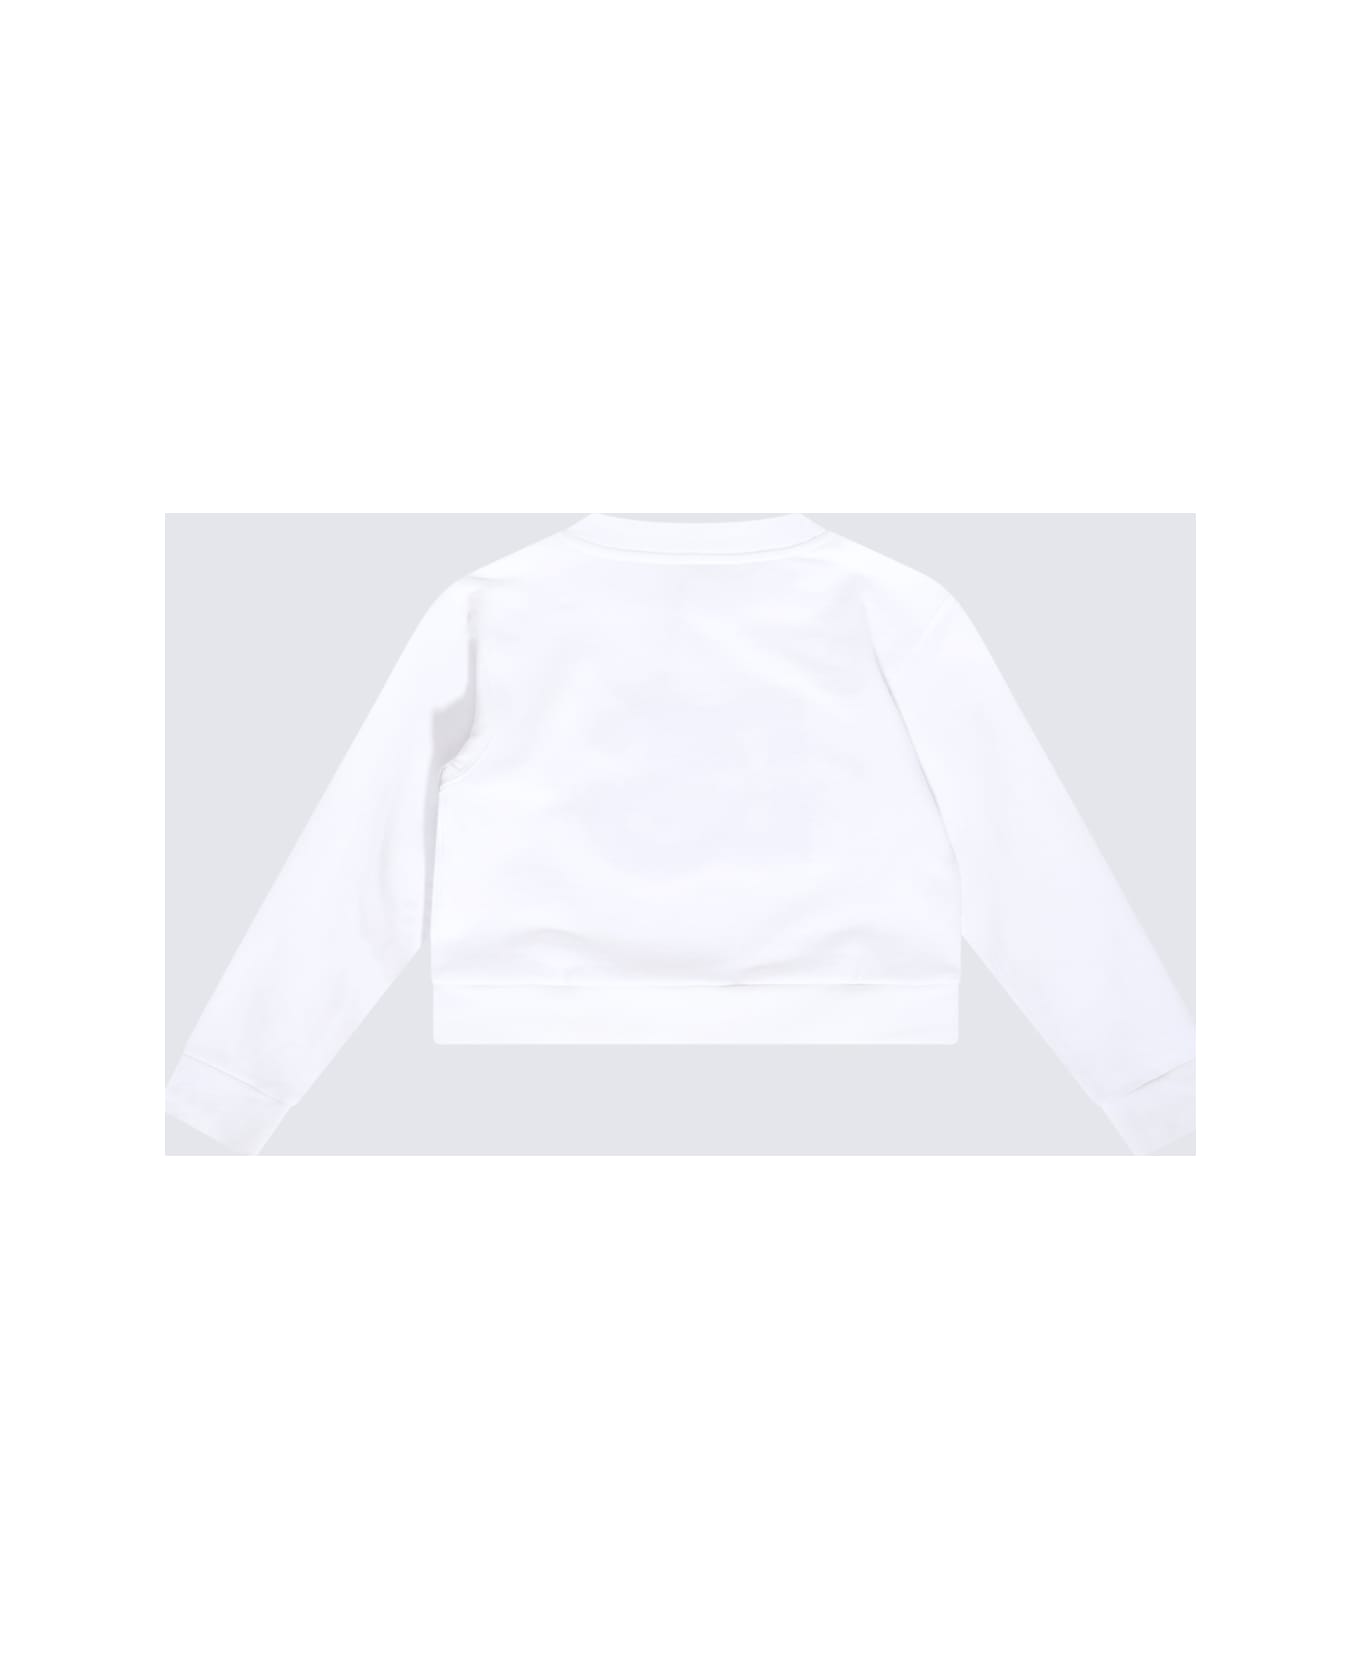 Dolce & Gabbana Bandana Print Silk Black White Shorts White Cotton Sweatshirt - White